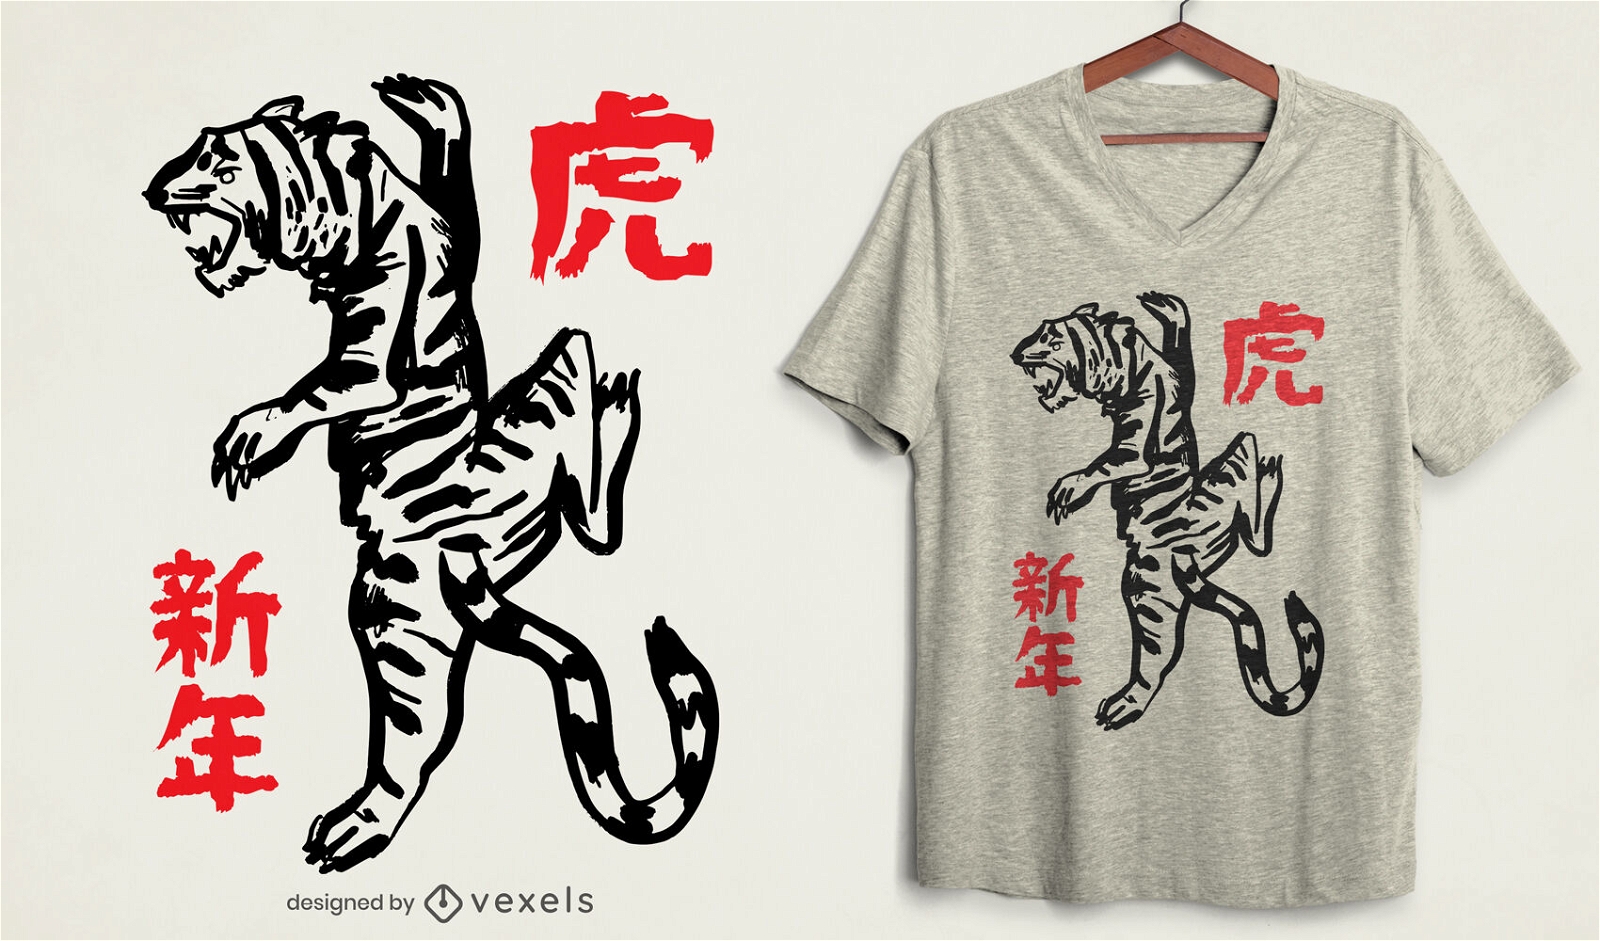 Dise?o de camiseta de tigre de a?o nuevo chino.